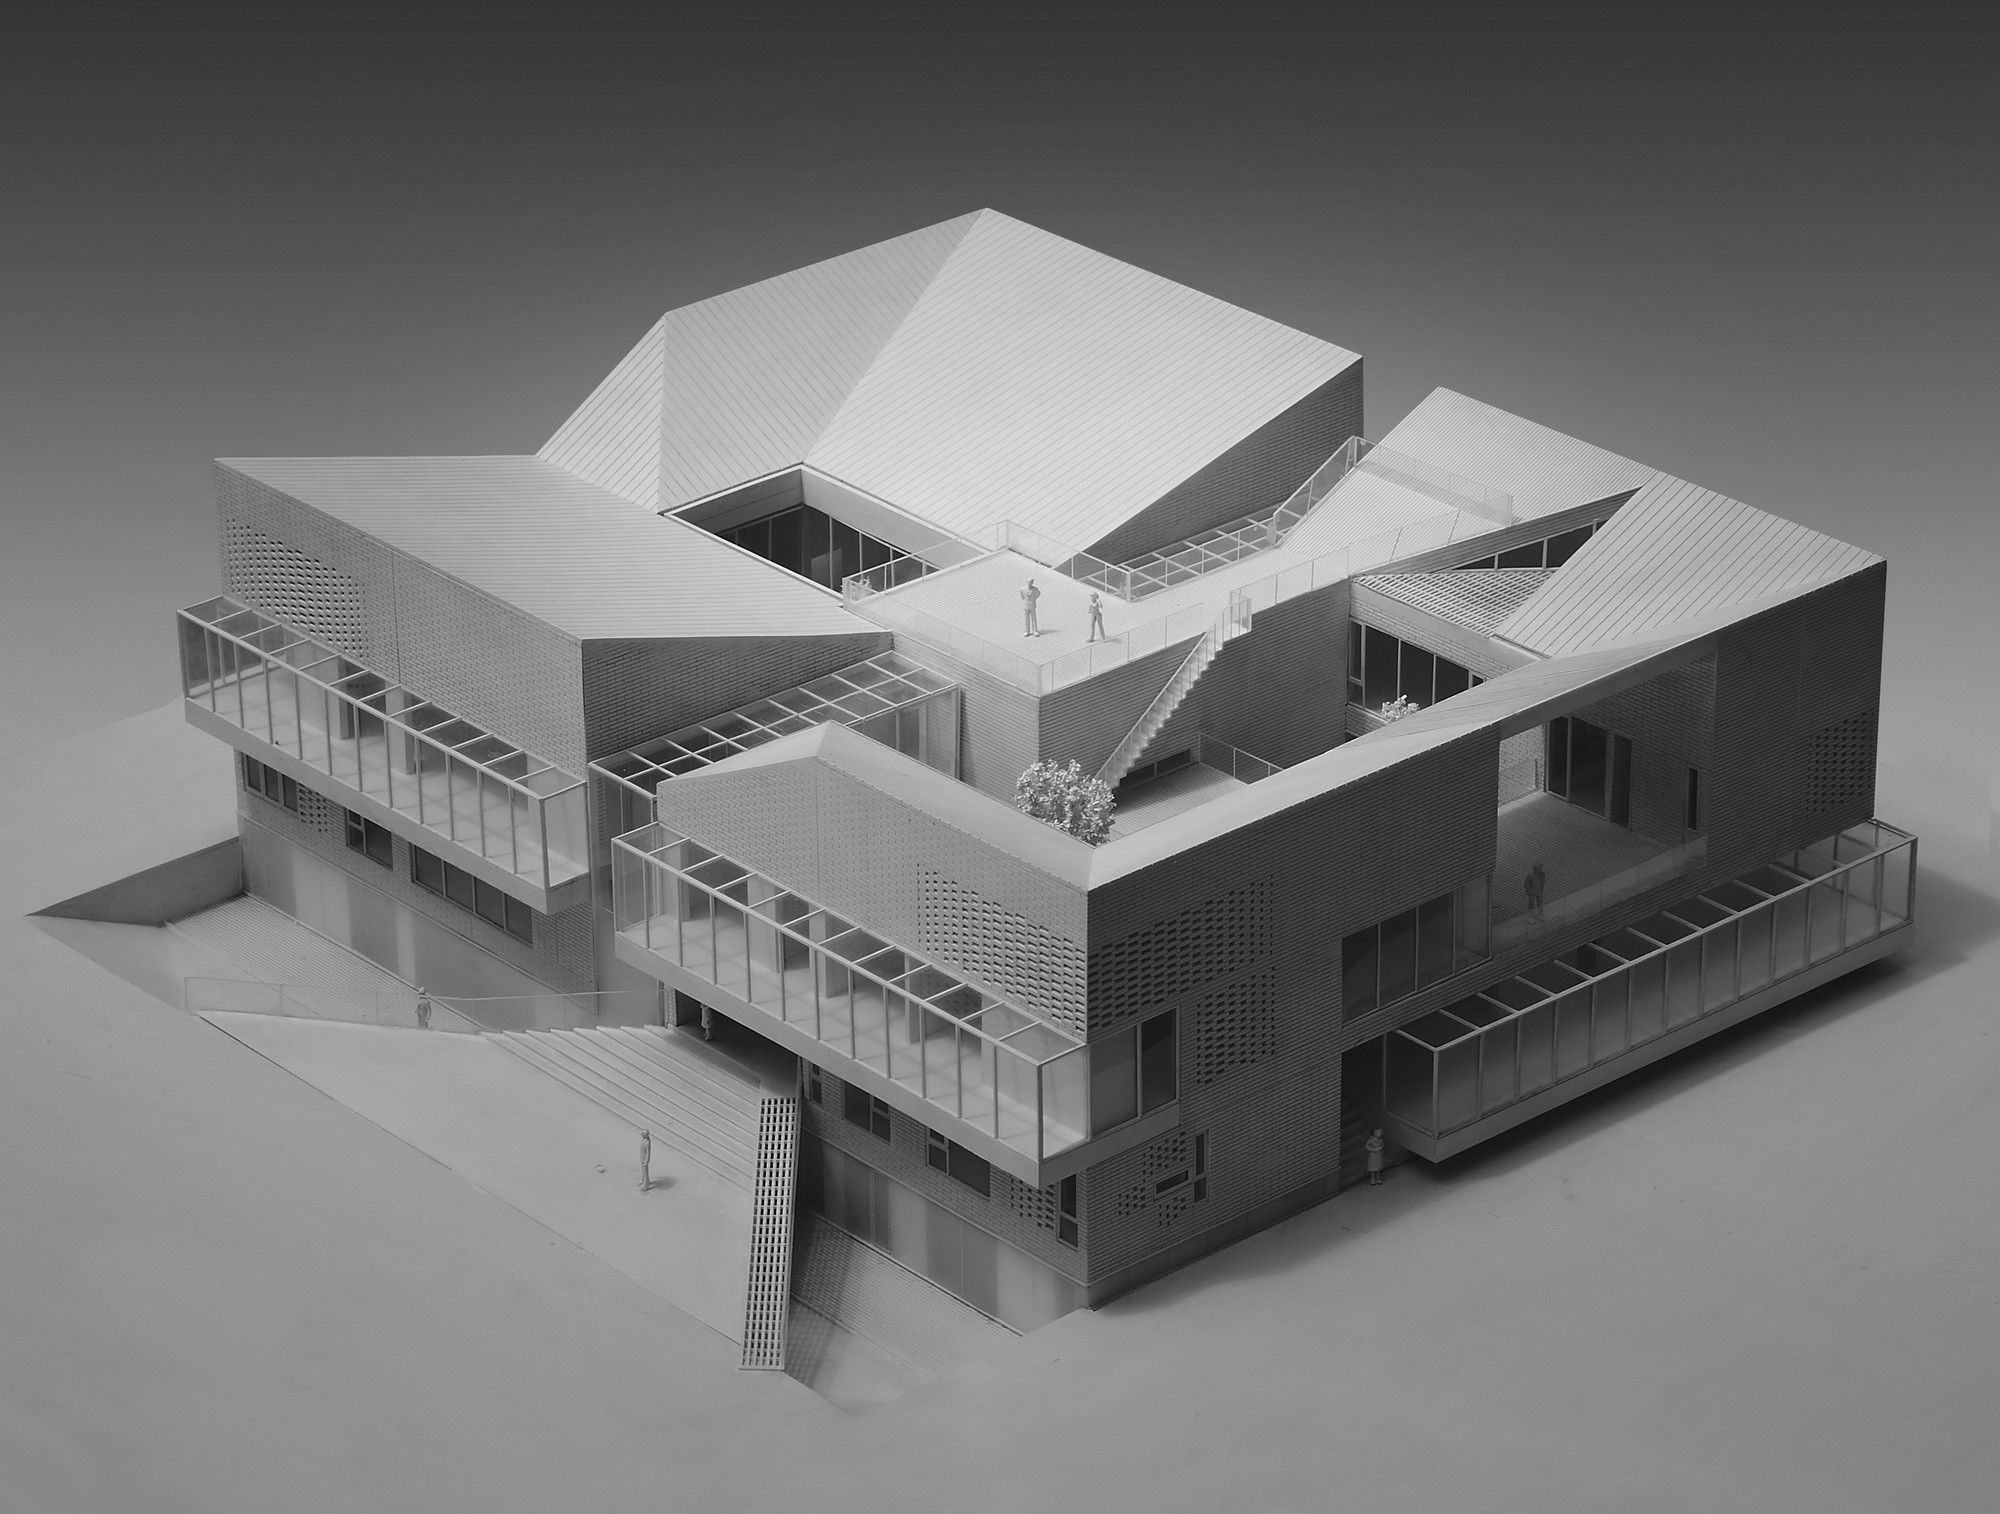 Architecture studio. Архитектурные здания для моделирования. Концептуальный макет здания. Моделирование в архитектуре. Современные архитектурные макеты.